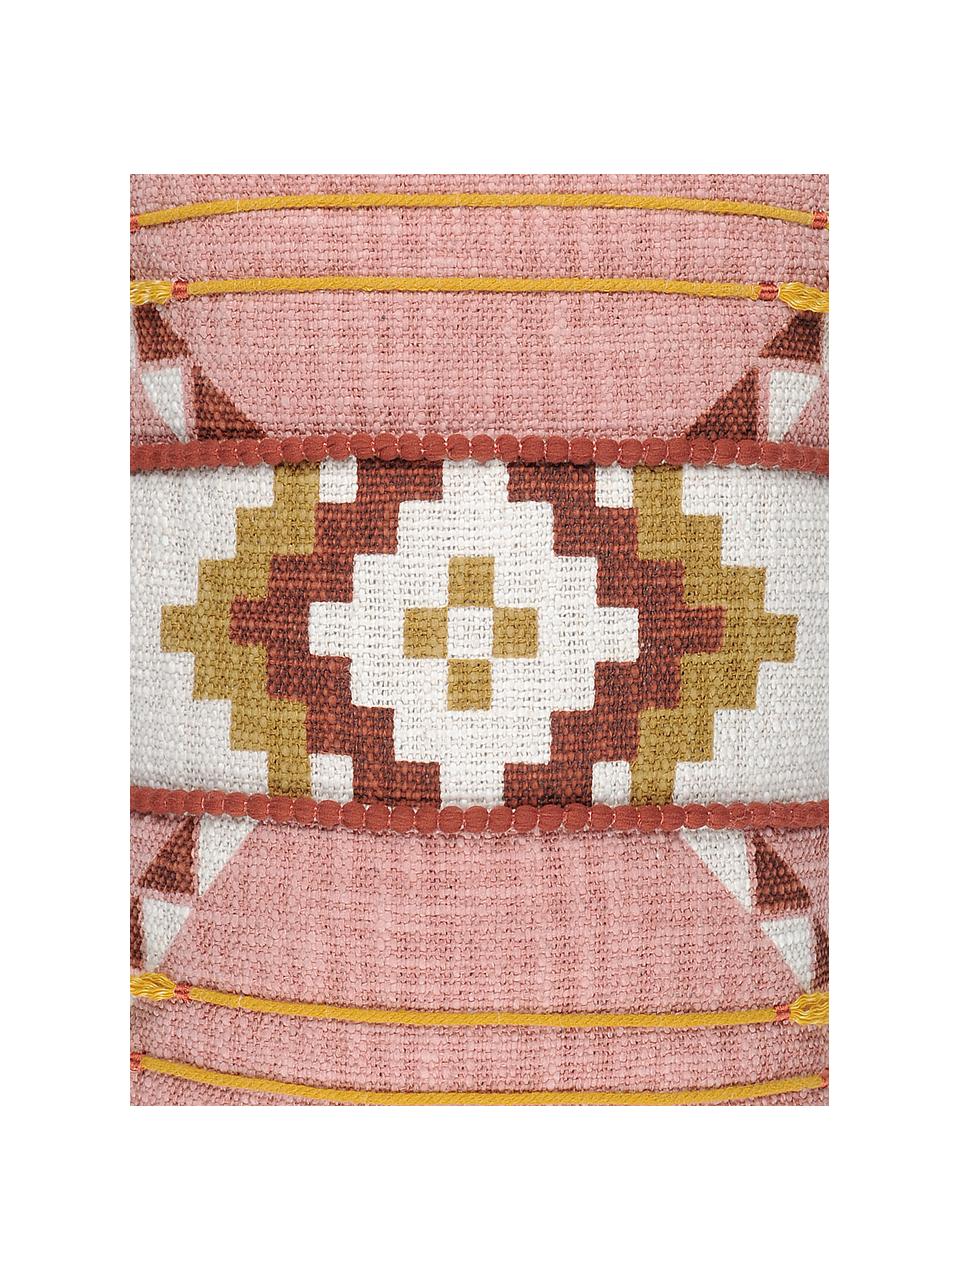 Kussenhoes Puebla met zomers ethno patroon, 100% katoen, Roze, geel, donkerrood, wit, 30 x 50 cm